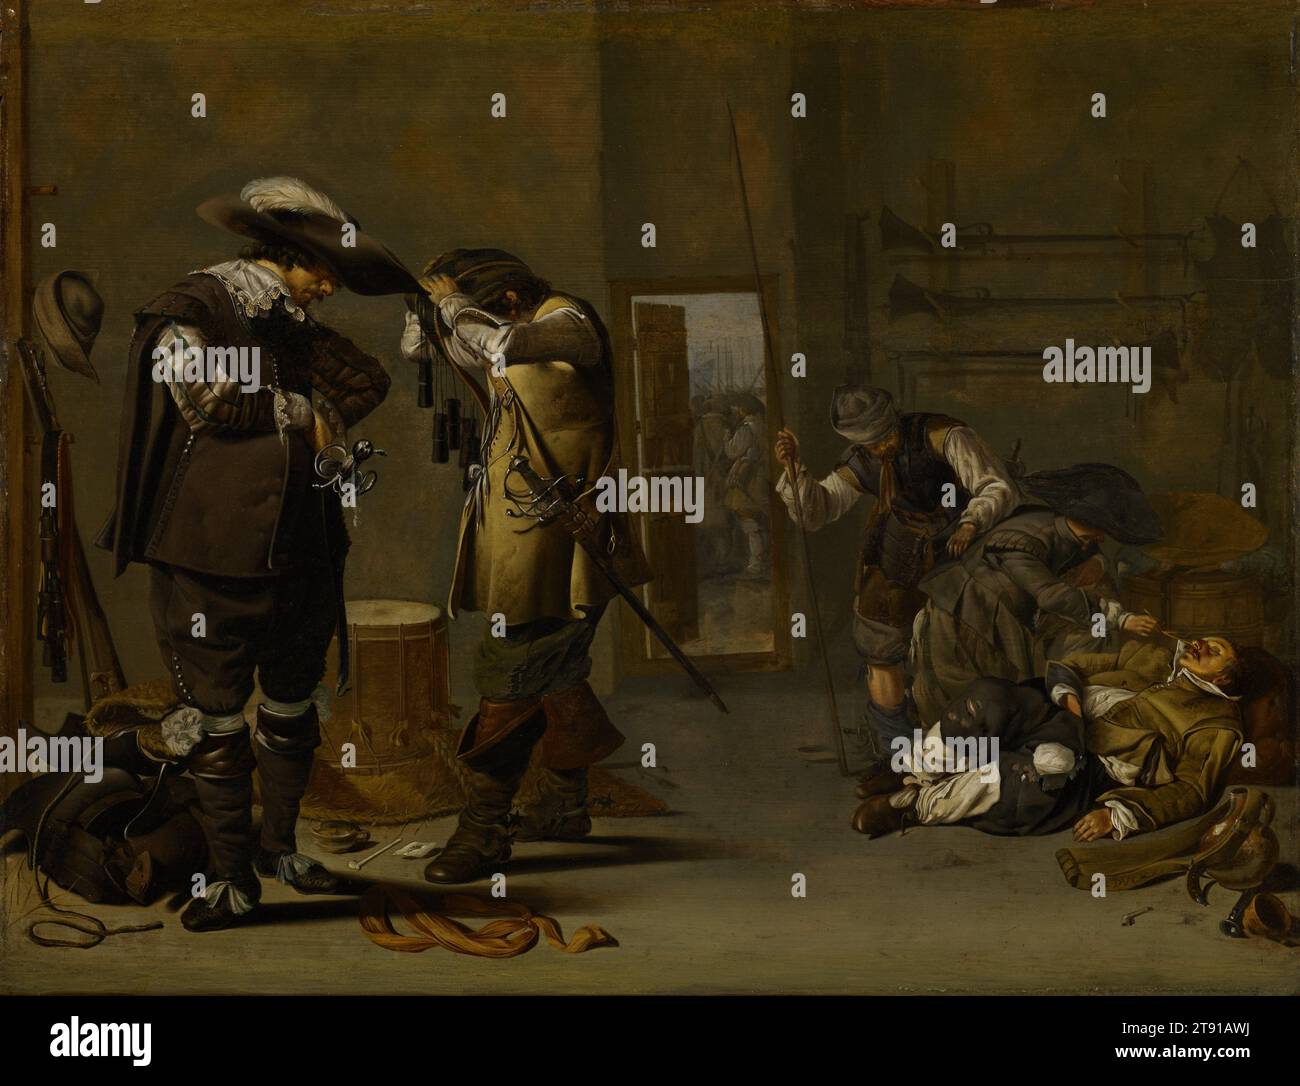 Soldats s'armant, milieu des années 1630, Jacob Duck, néerlandais, vers 1600-1667, 17 x 22 3/8 po (43,18 x 56,83 cm) (panneau)28 x 33 3/8 po (71,12 x 84,7 cm) (cadre extérieur), huile sur panneau, pays-Bas, 17e siècle, à gauche, deux soldats pris dans la guerre de trente ans s'habillent, l'un soulevant un bandolier au-dessus de sa tête avec plusieurs cylindres pendants - des charges de poudre contenant de la poudre à canon pour son mousquet. Sur la droite, un soldat chatouille le nez d'un combattant qui s'est probablement évanoui après avoir drainé le flacon à proximité. Le chatouilleur ne sait pas que sa poche est en train d’être cueillie. Banque D'Images